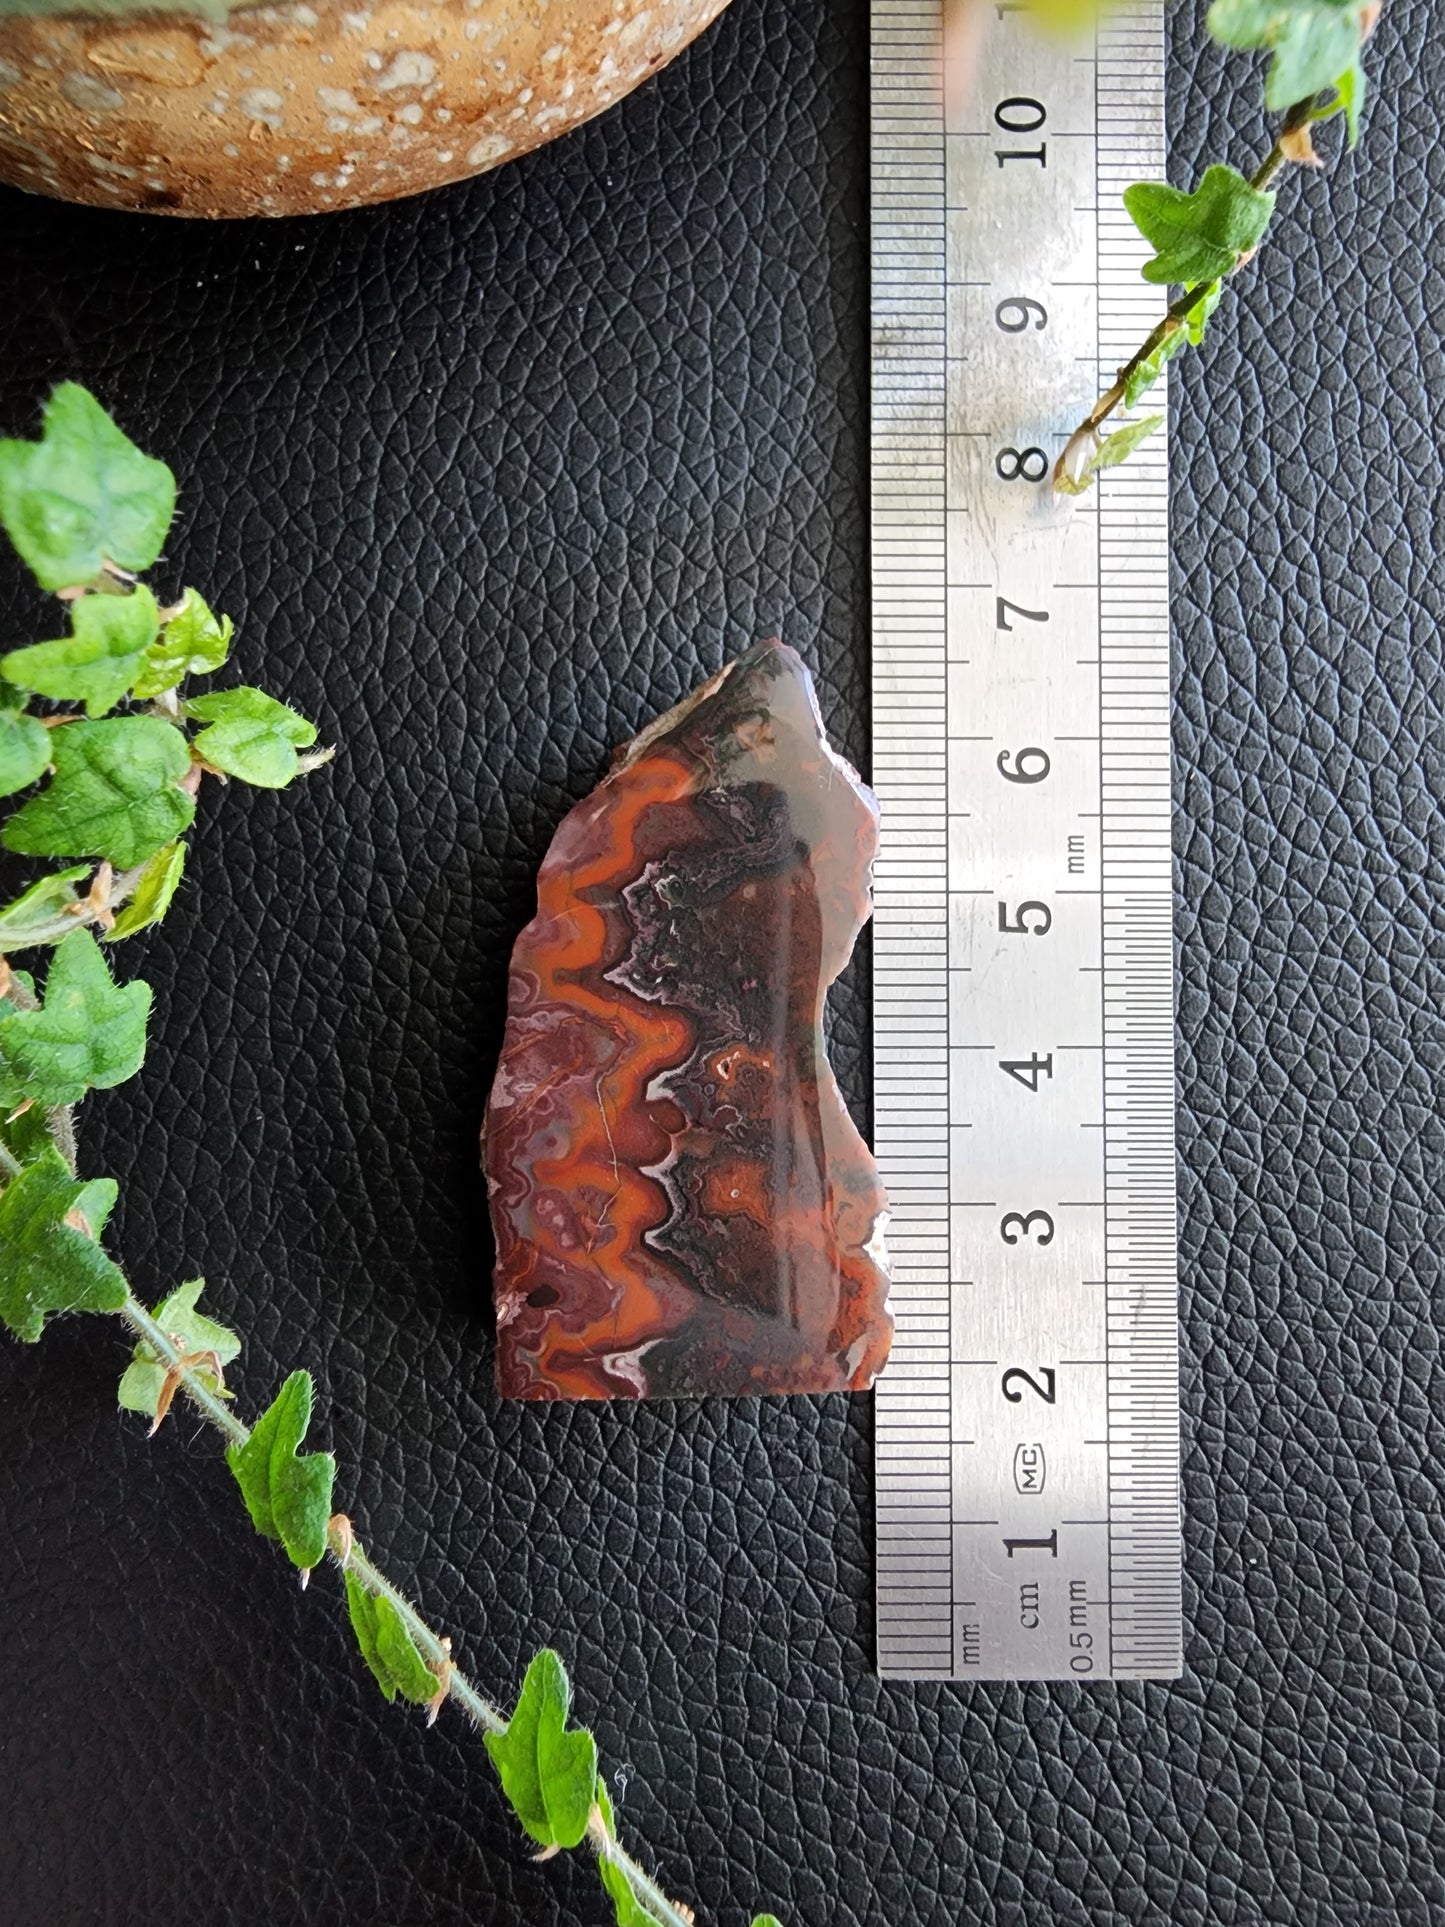 Idaho seam agate specimen